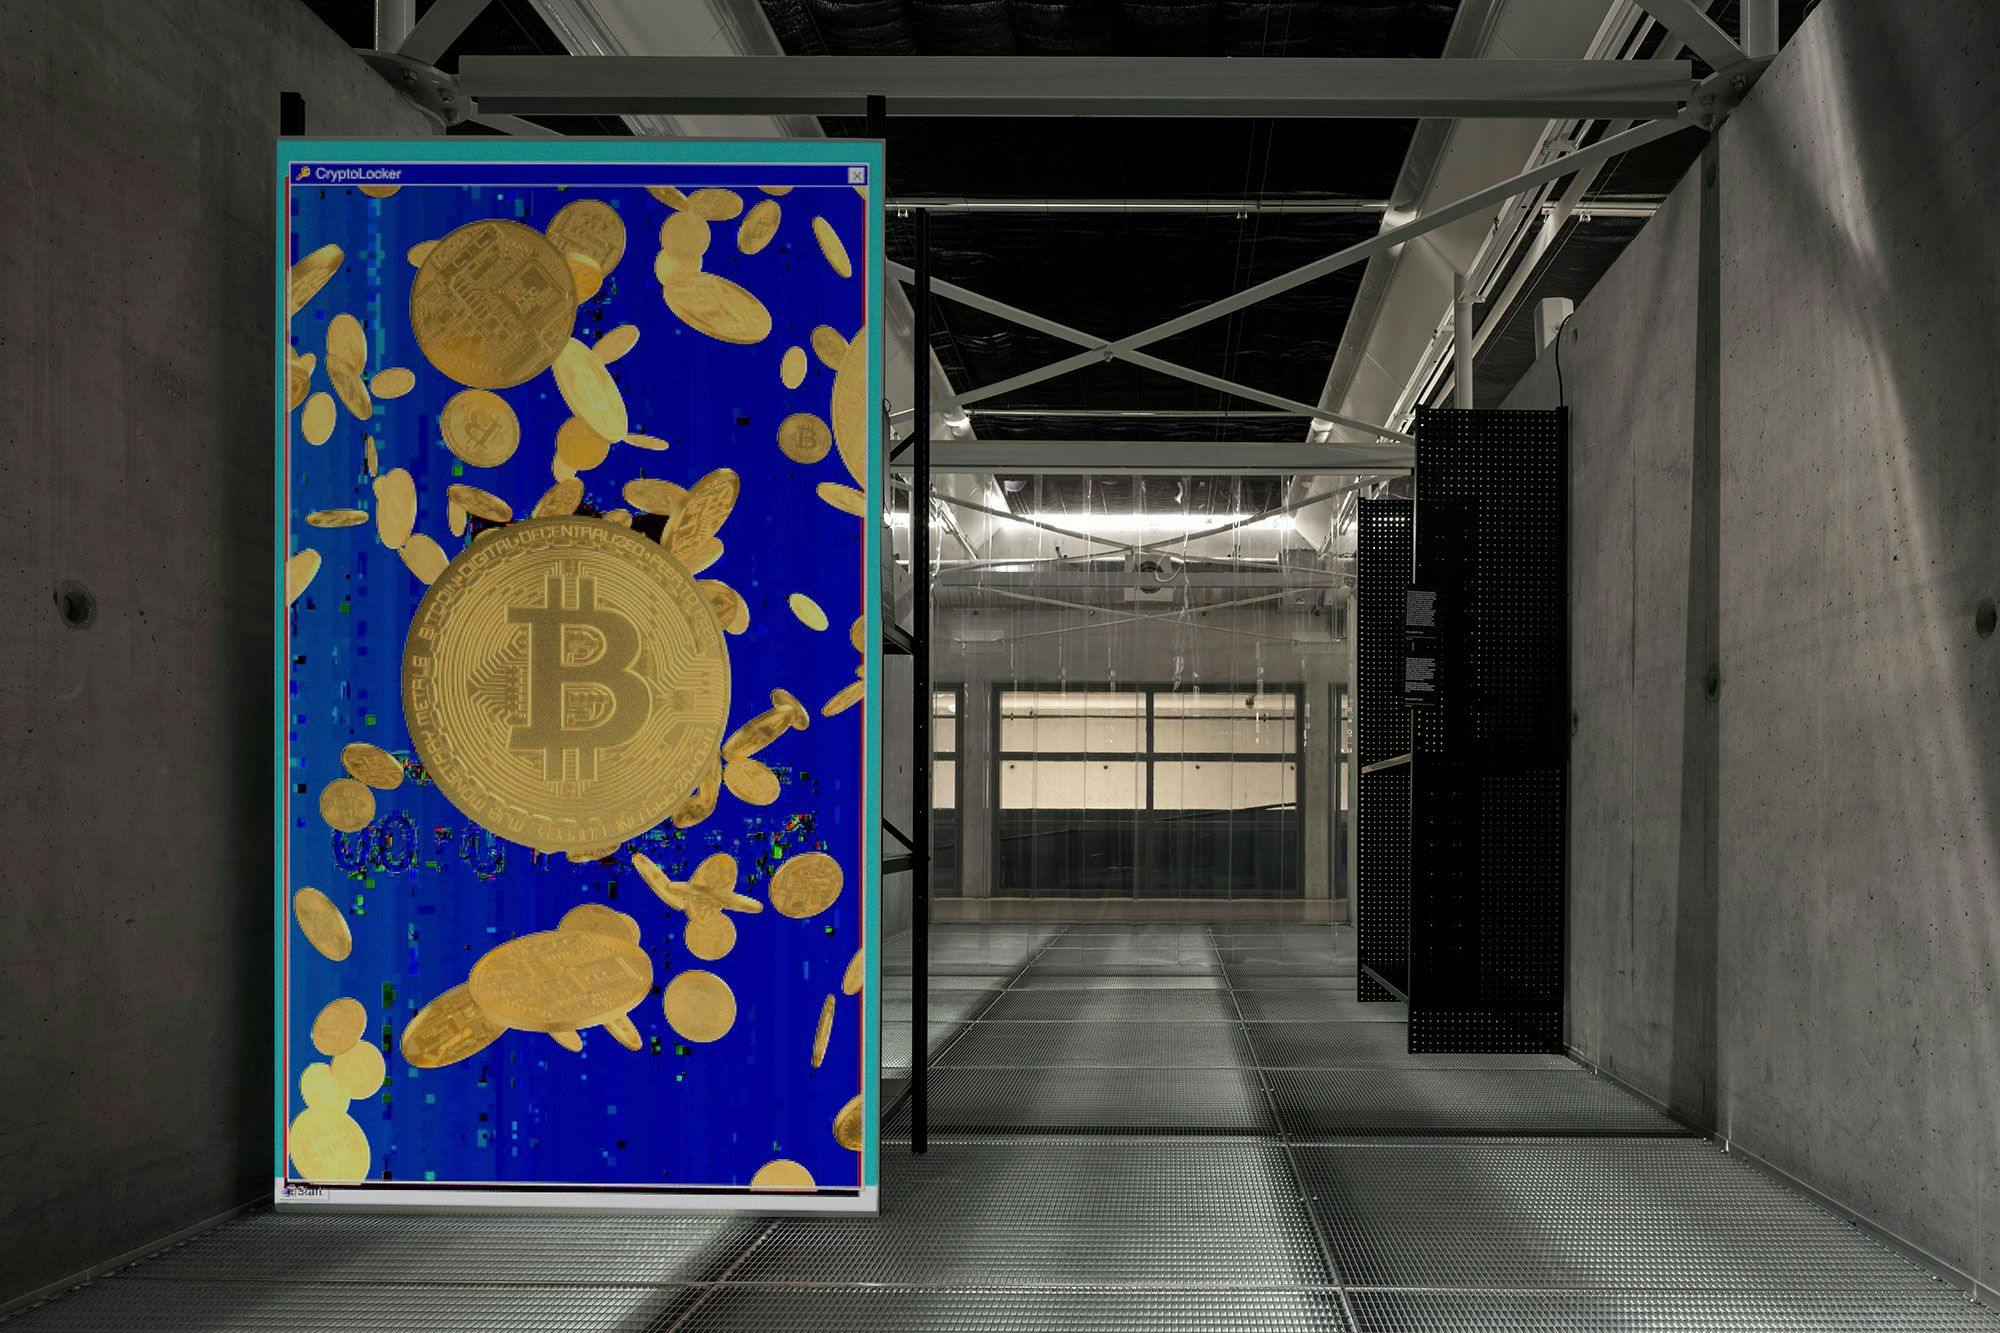 CryptoLocker gijzelsoftware (2013), te zien in de Malware exhibition in Het Nieuwe Instituut. Artistieke interpretatie door Bas van de Poel en  Tomorrow Bureau. Beeld: Ewout Huibers 